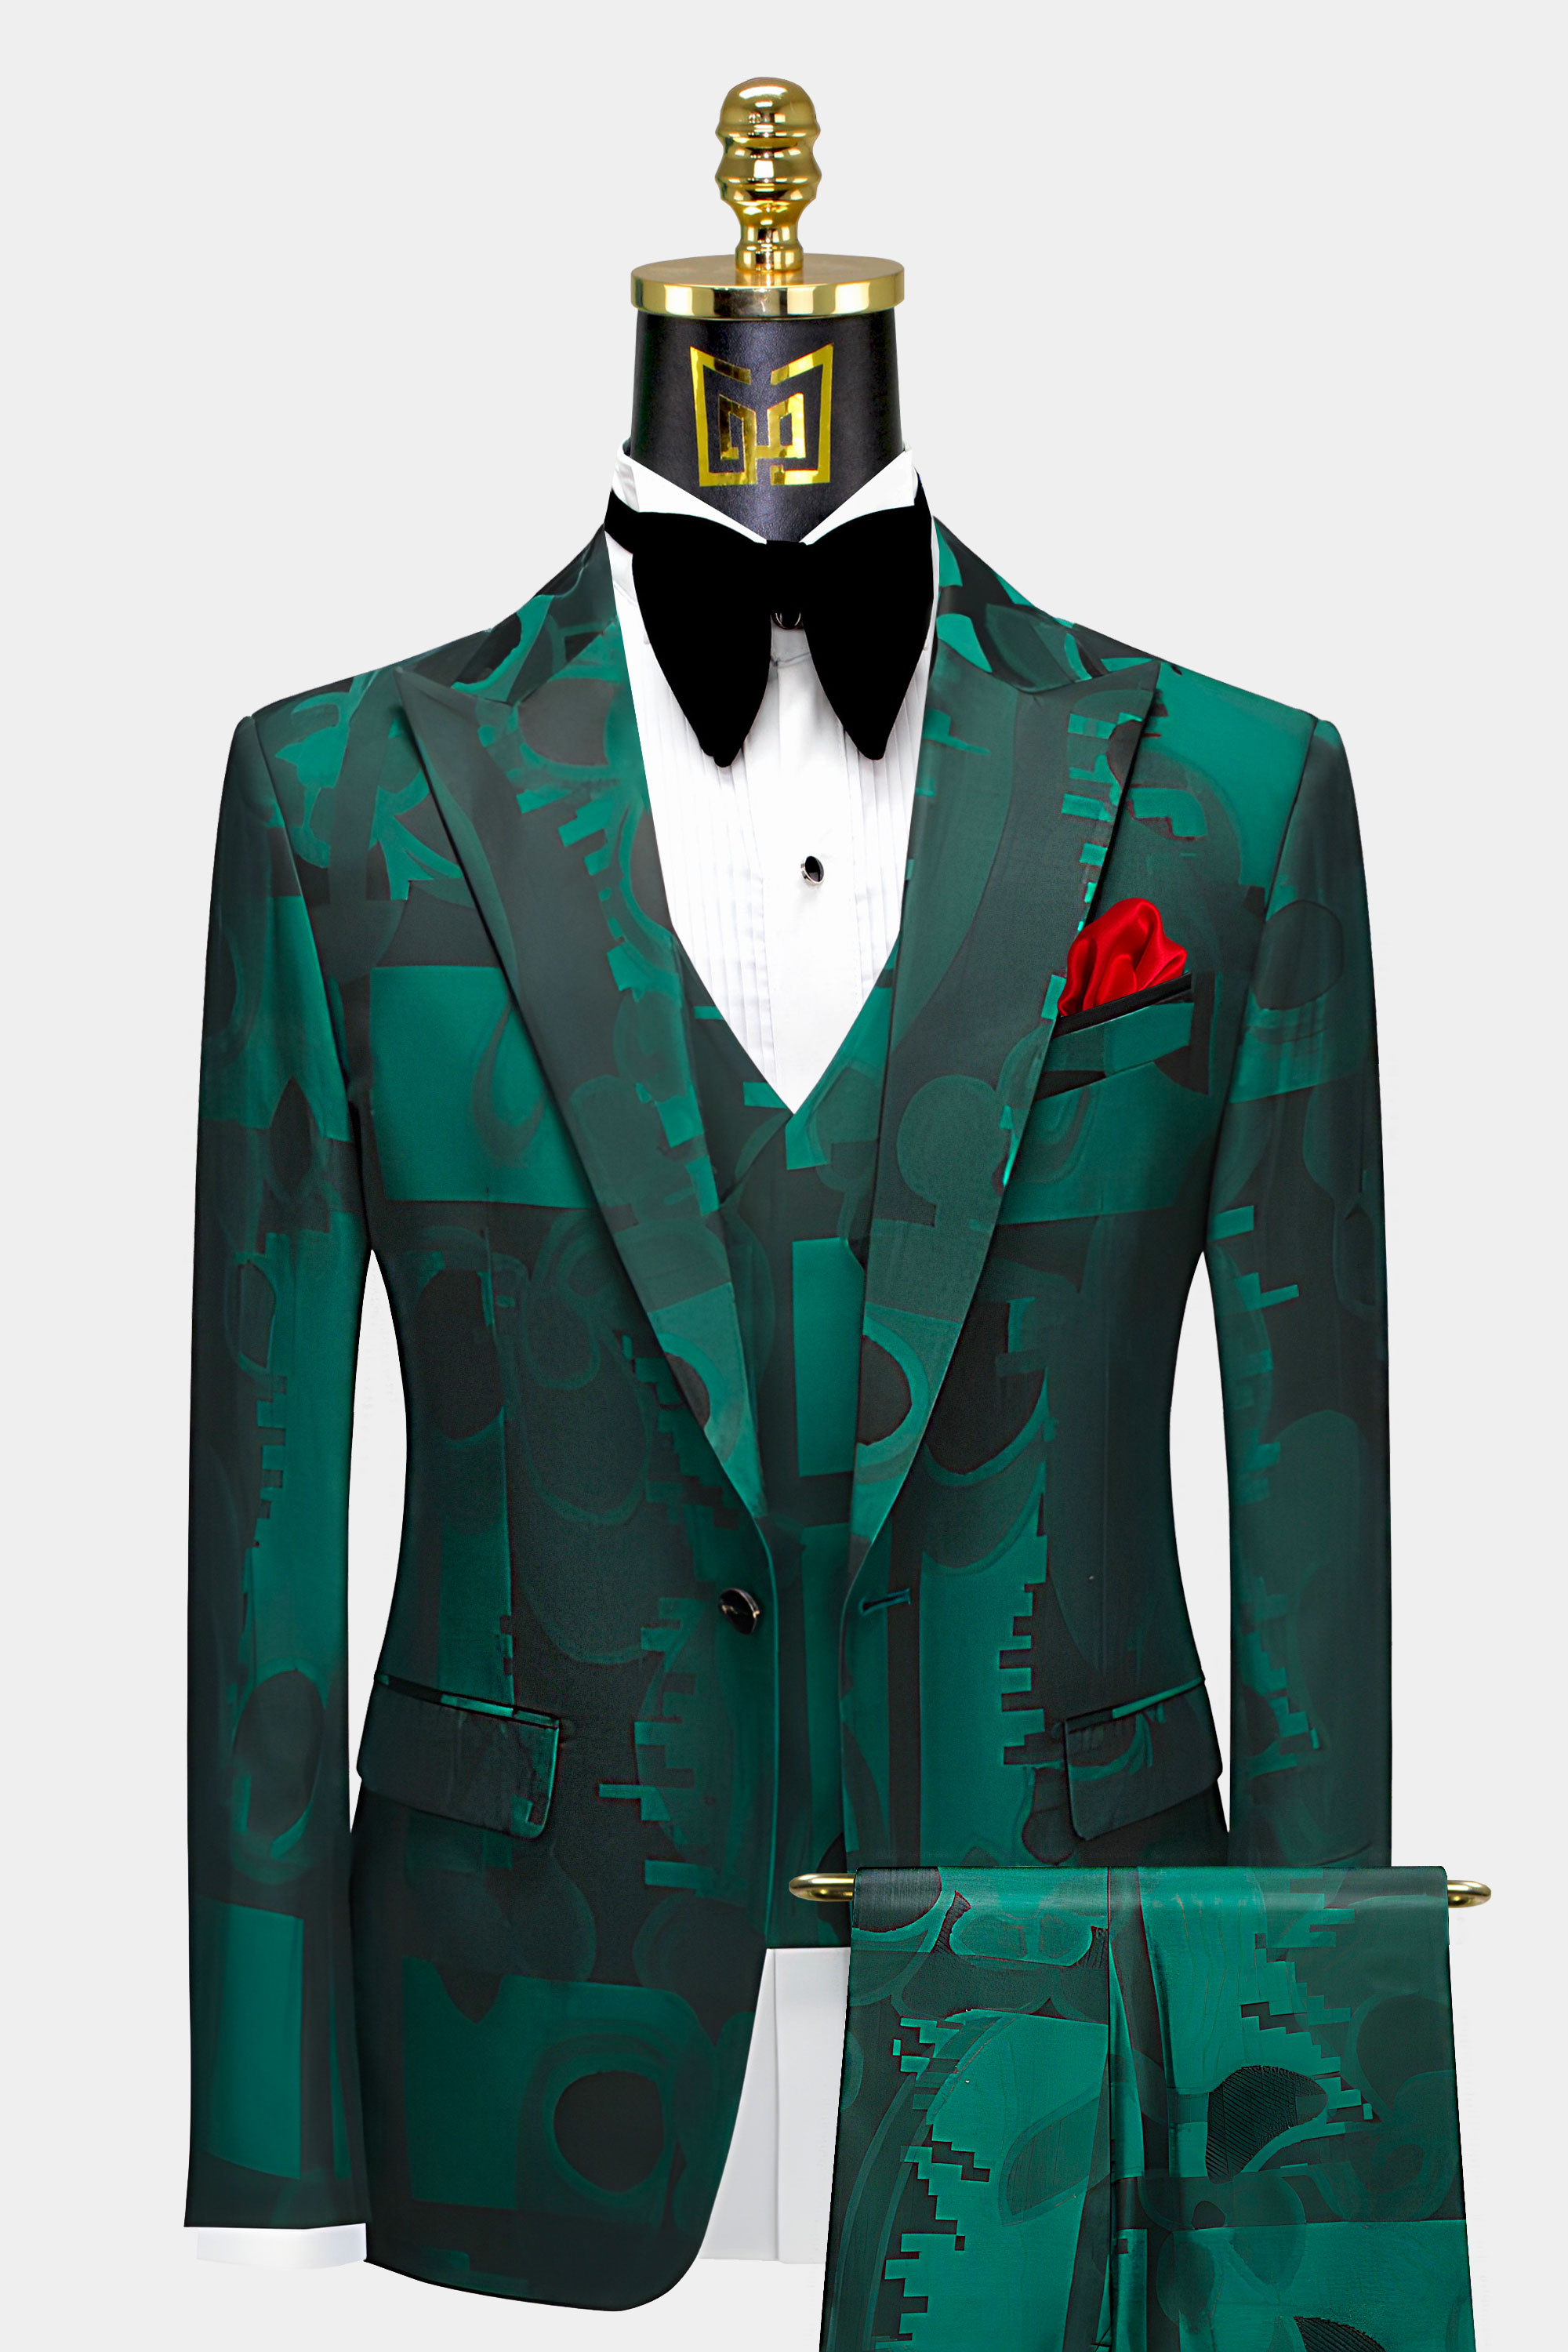 Mens-Green-and-Black-Suit-Wedding-Groom-Tuxedo-from-Gentlemansguru.com